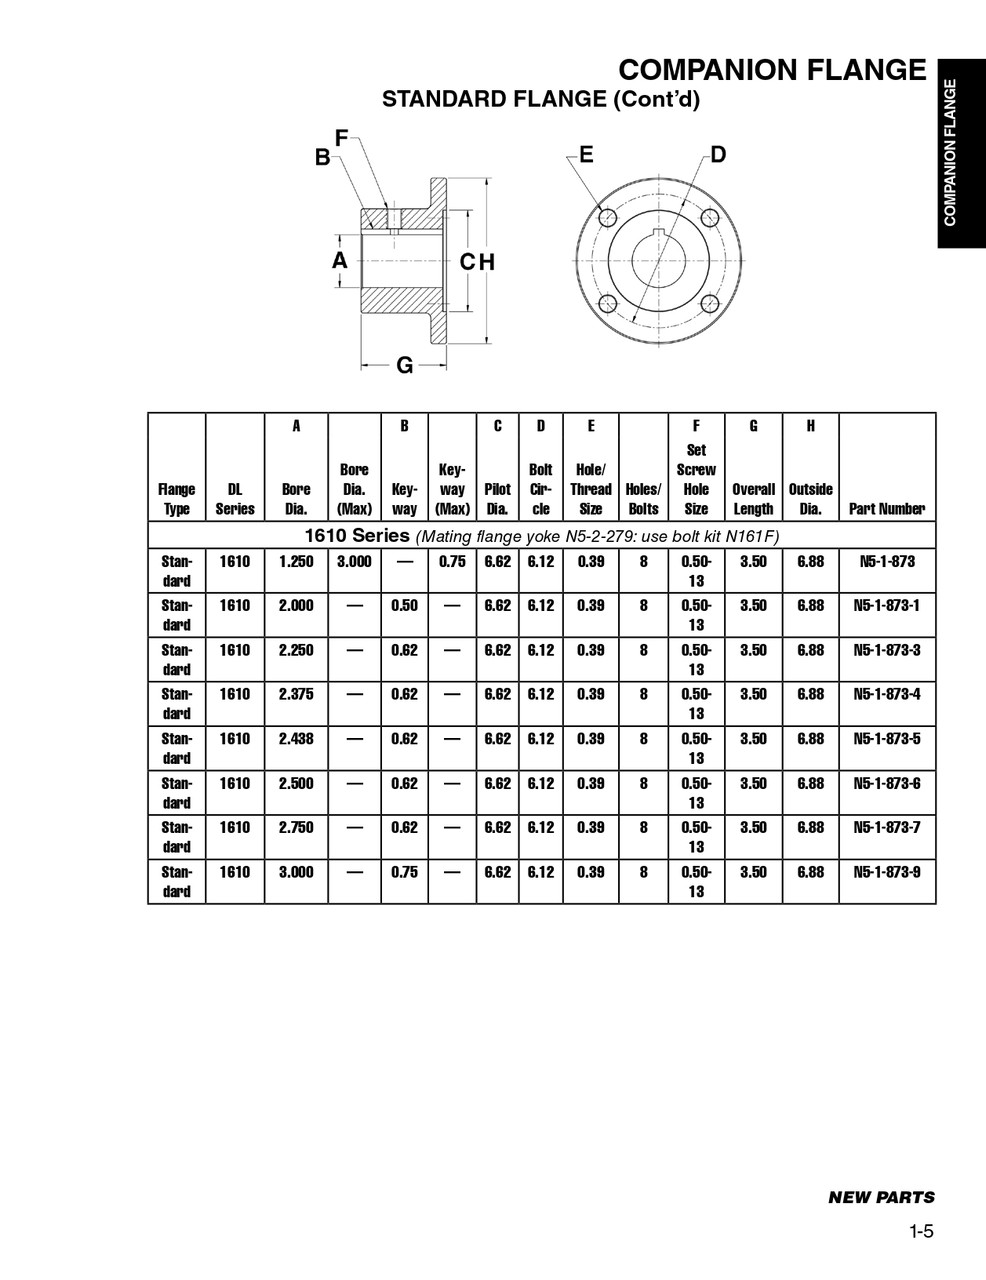 3.00" Round - Spicer® 1610 Series Standard Companion Flange  N5-1-873-9